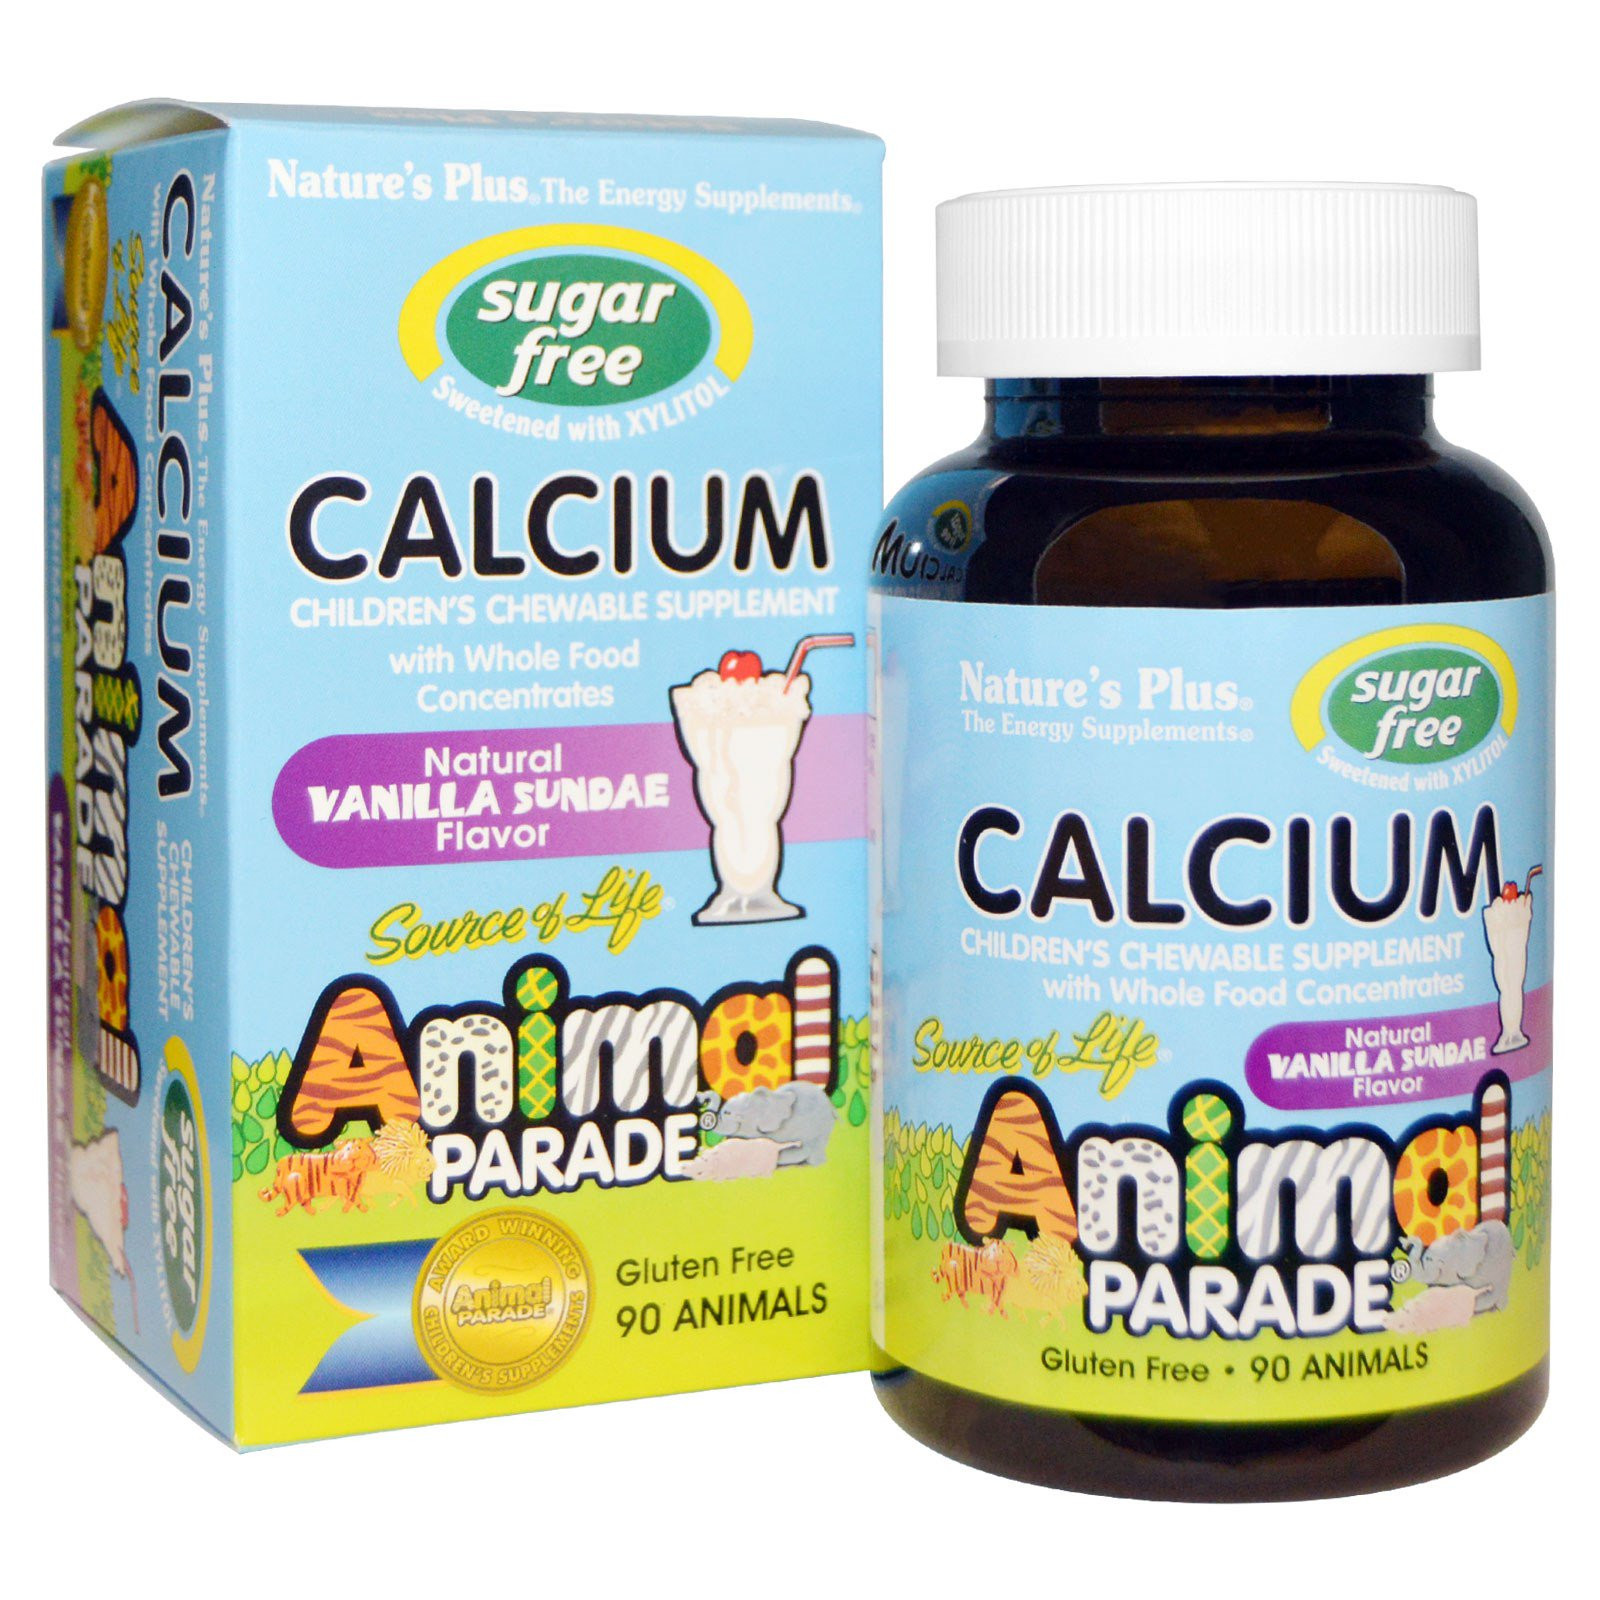 Calcium, Sugar Free, Natural Vanilla Sundae Flavor (90 Animals) - Nature&apos;s Plus